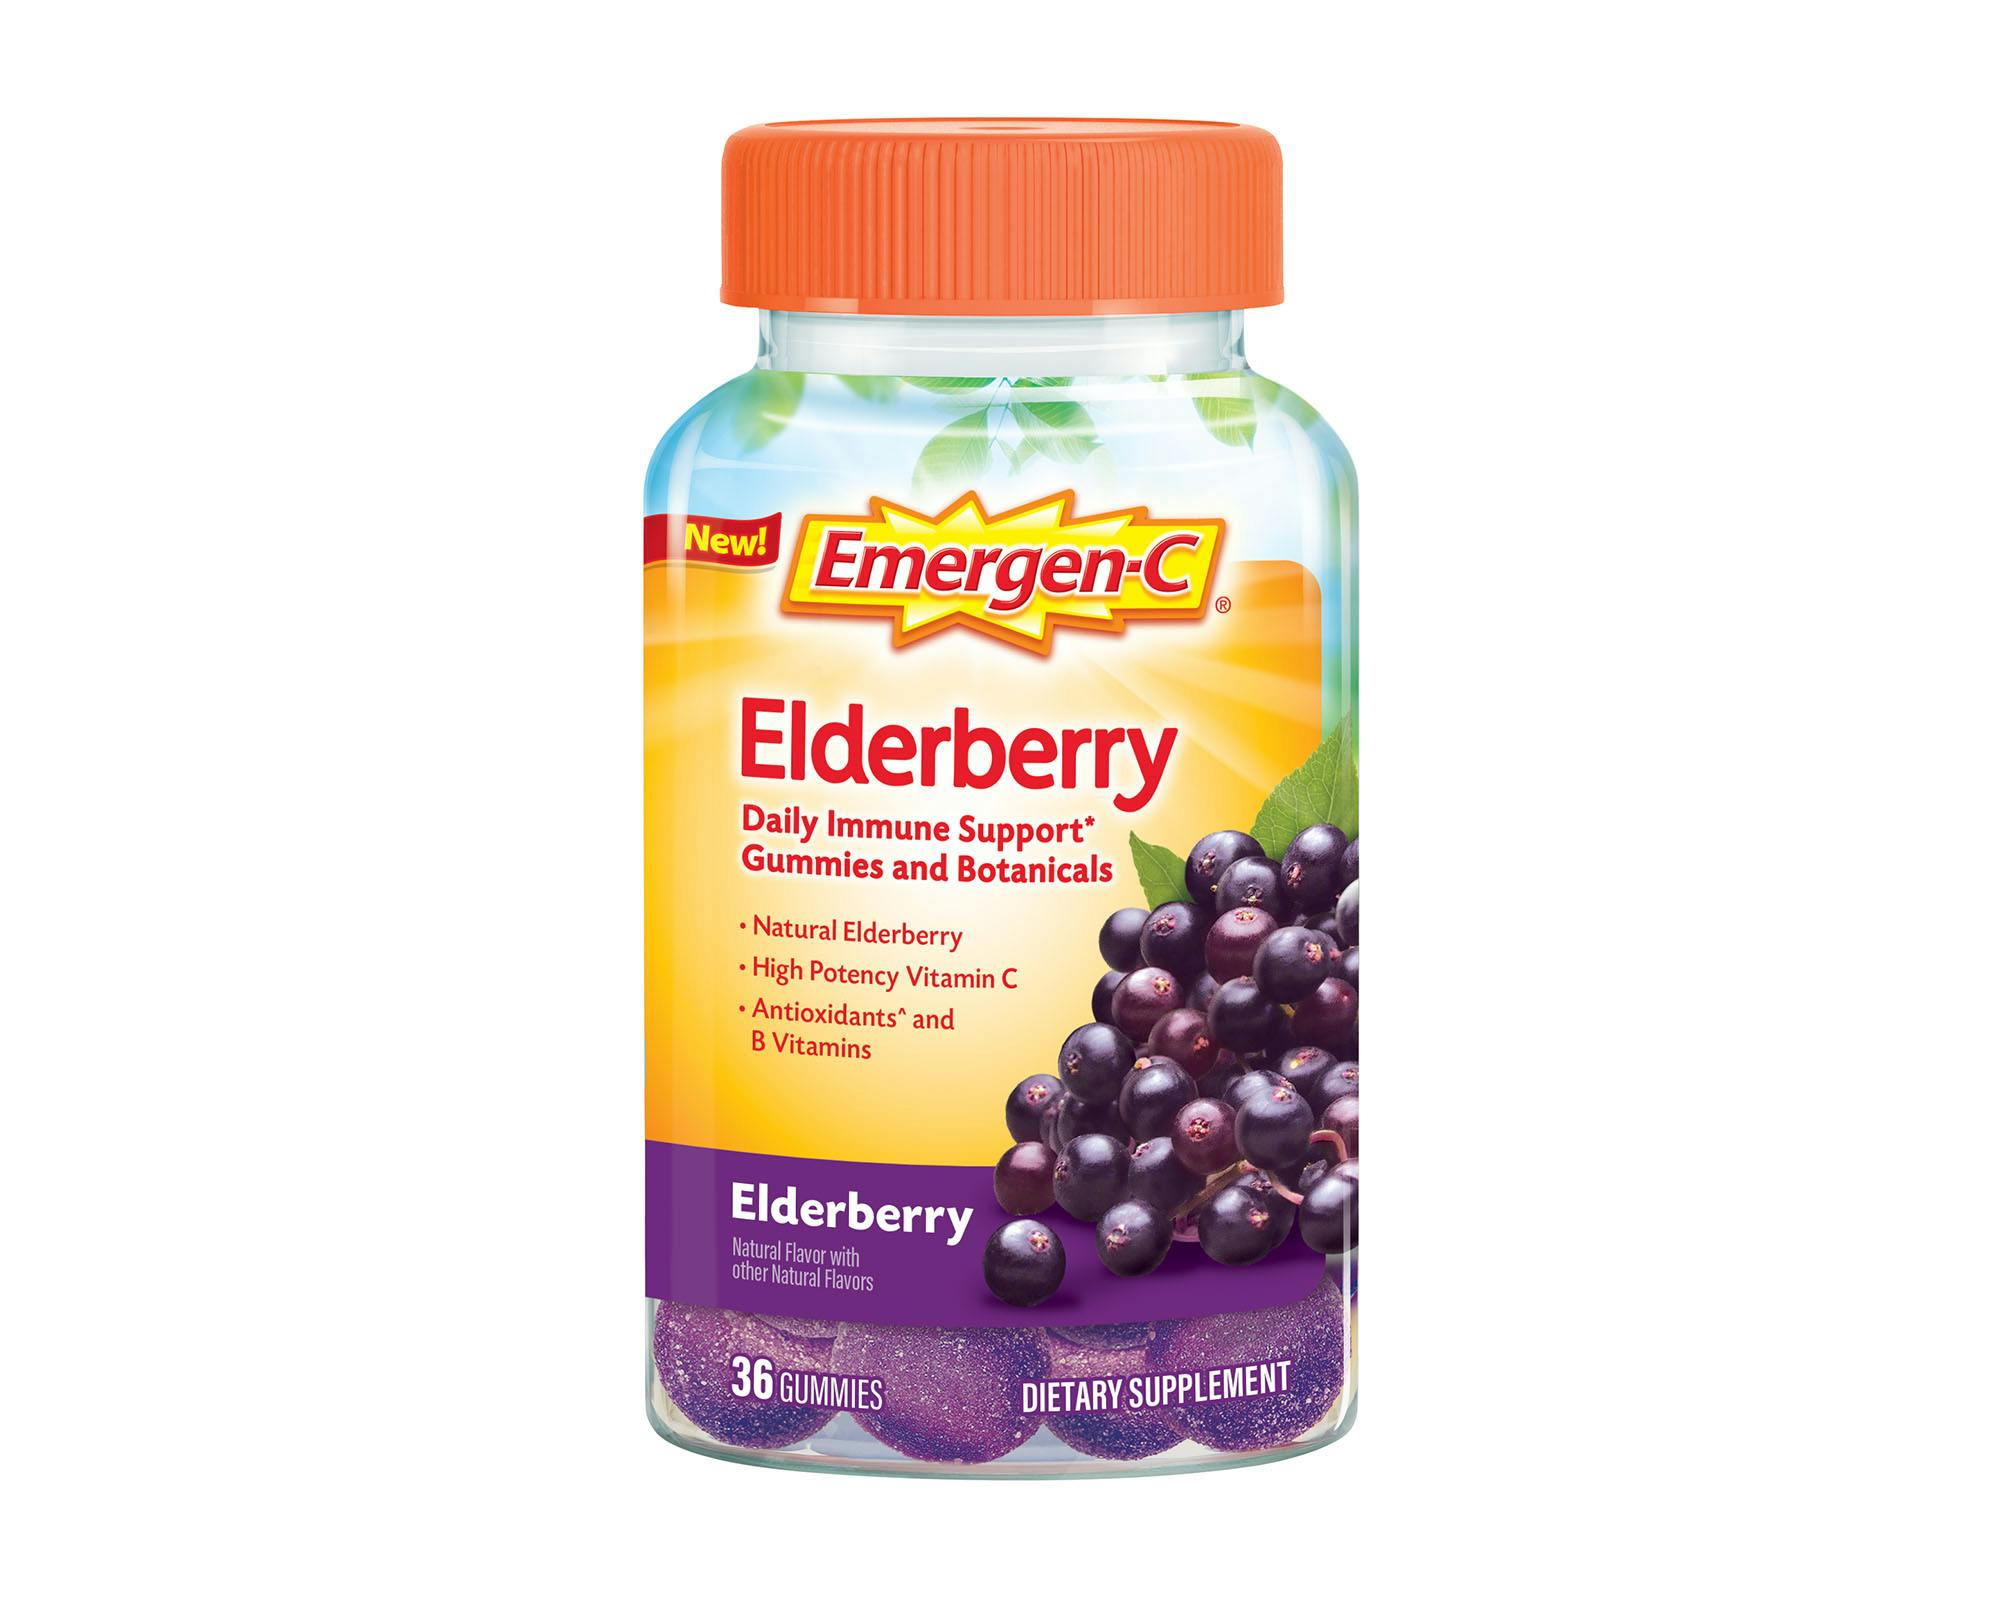 Elderberry Botanicals Immune Support Gummies bottle